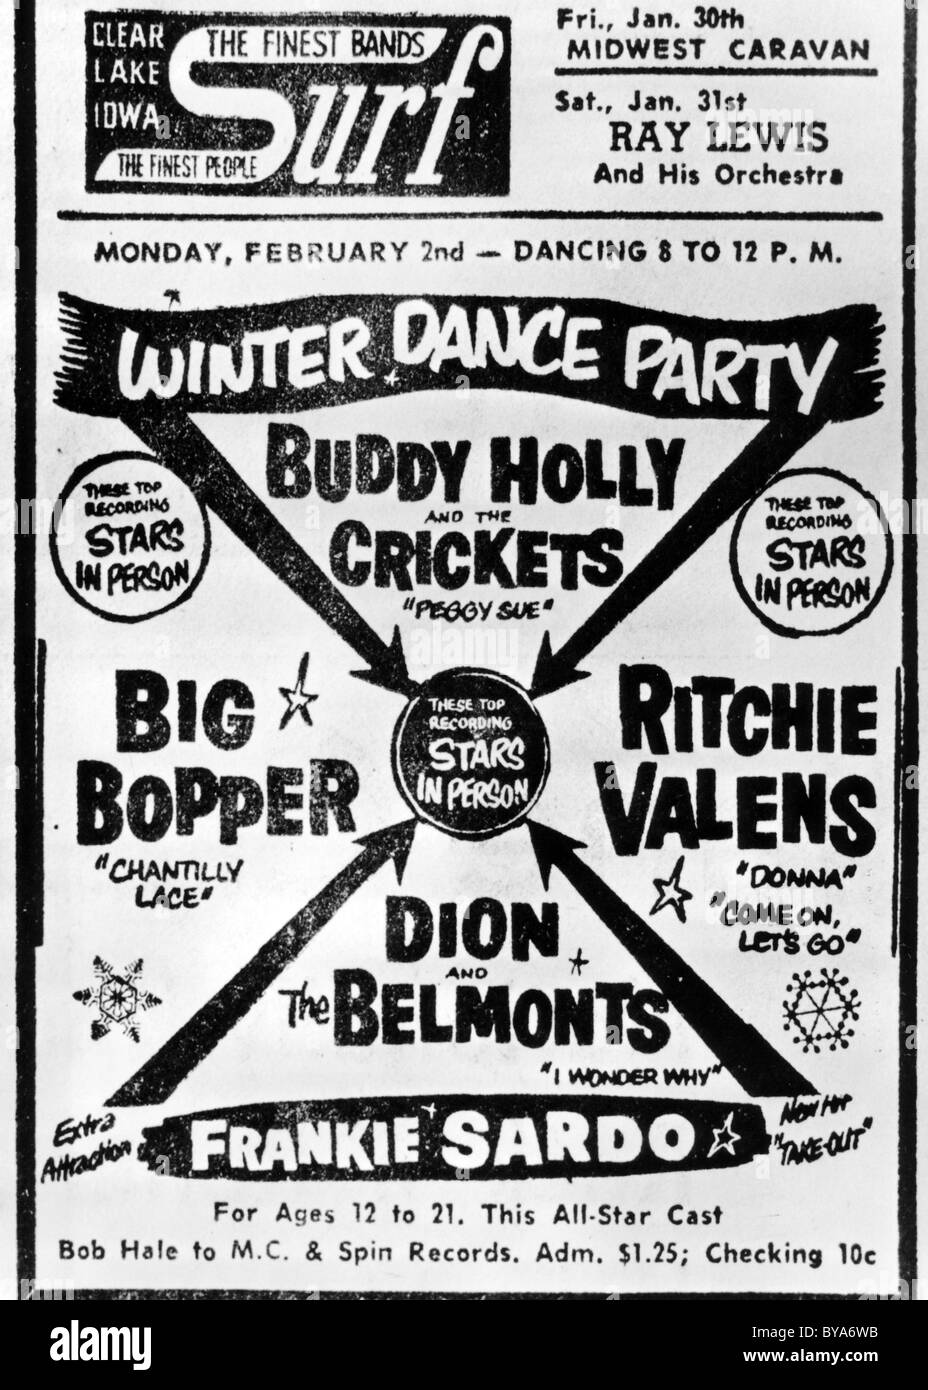 BUDDY HOLLY ET LES GRILLONS Poster pour le dernier concert du 2 février 1959 à Clear Lake, Iowa Banque D'Images